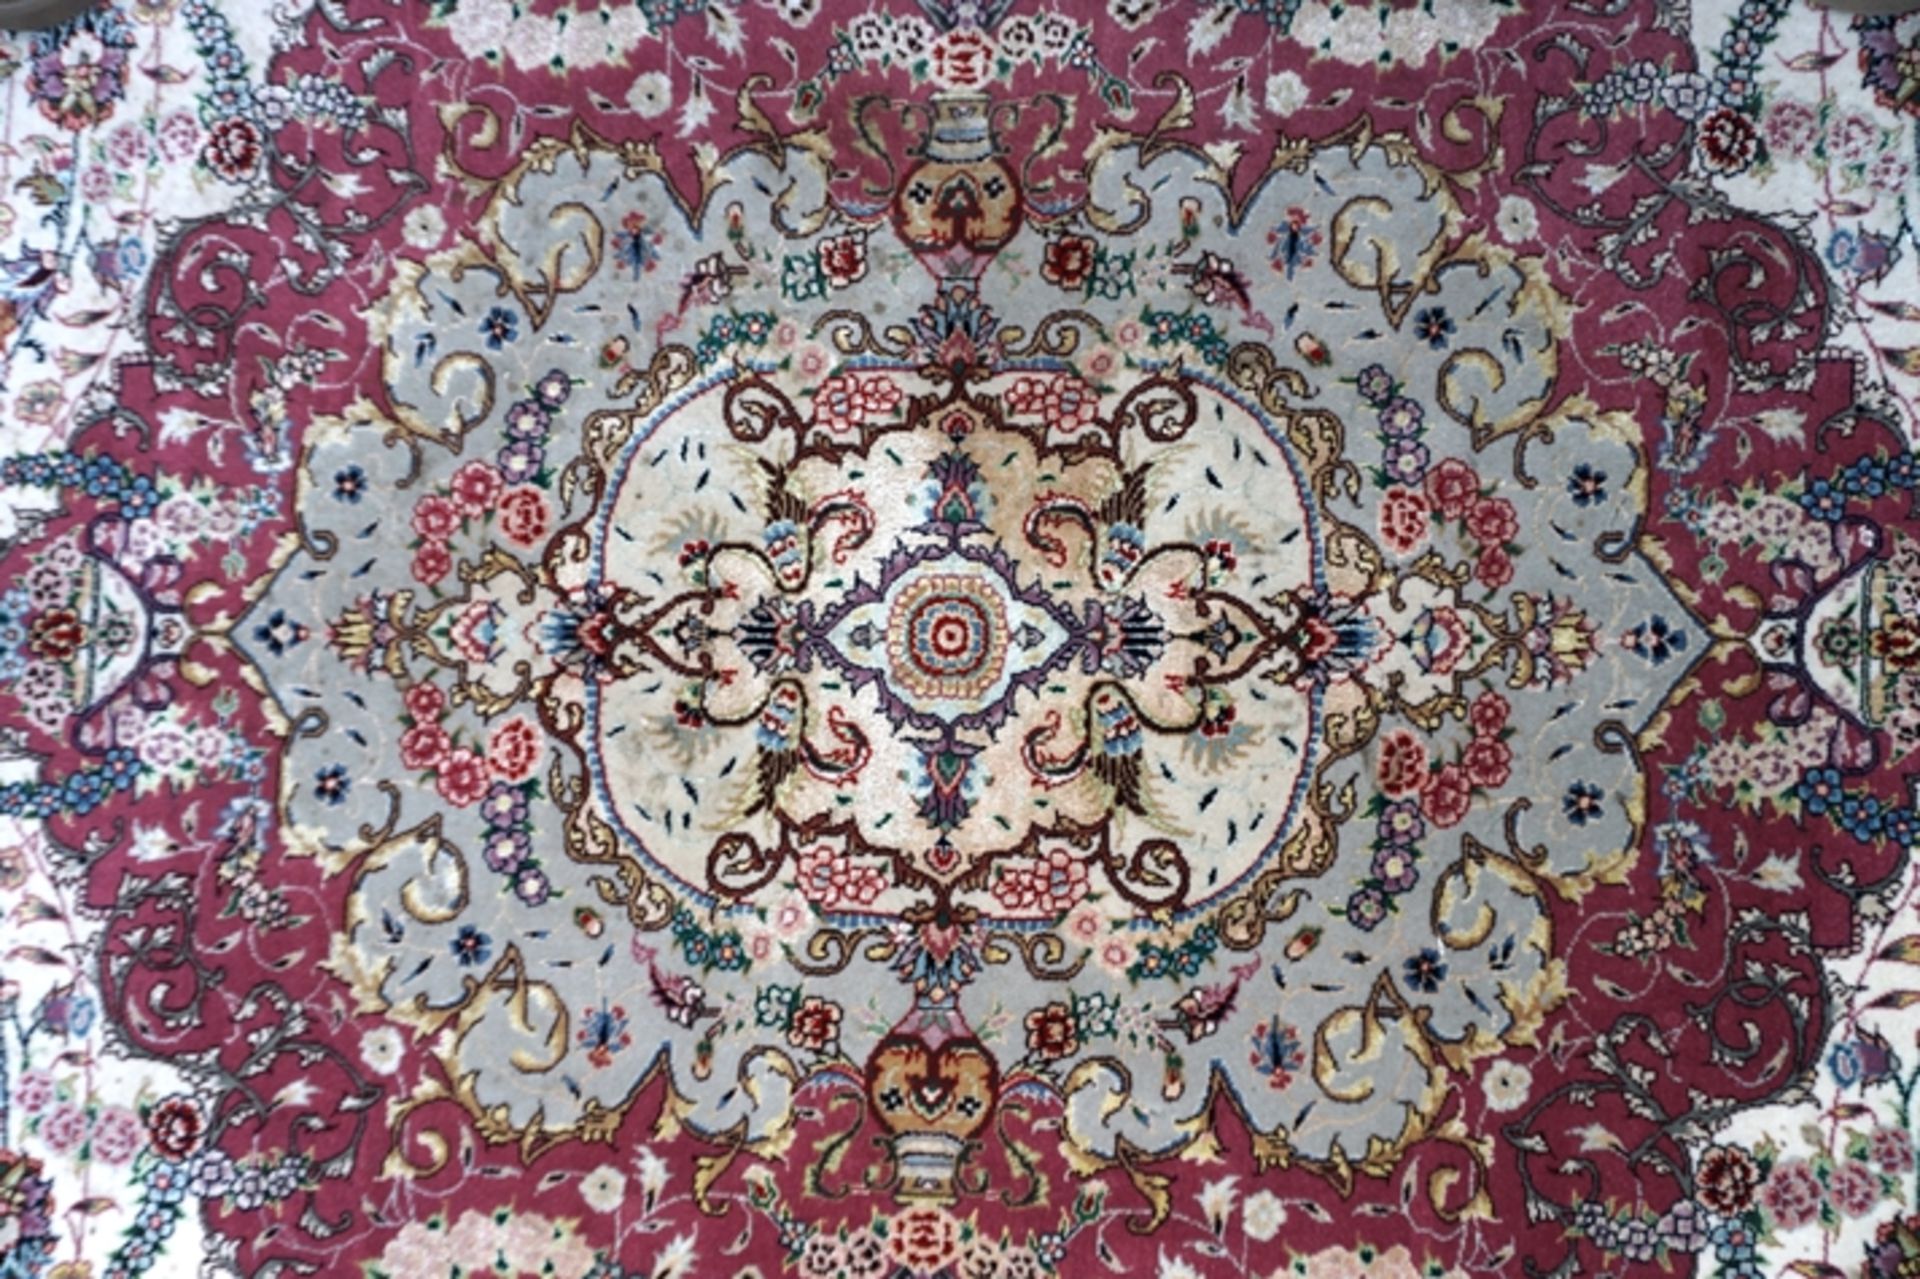 Teppich, Kaschmir, Seide, beige-altrosé-gründig, 350x250cm, ca. 800.000 Knoten - Image 2 of 5